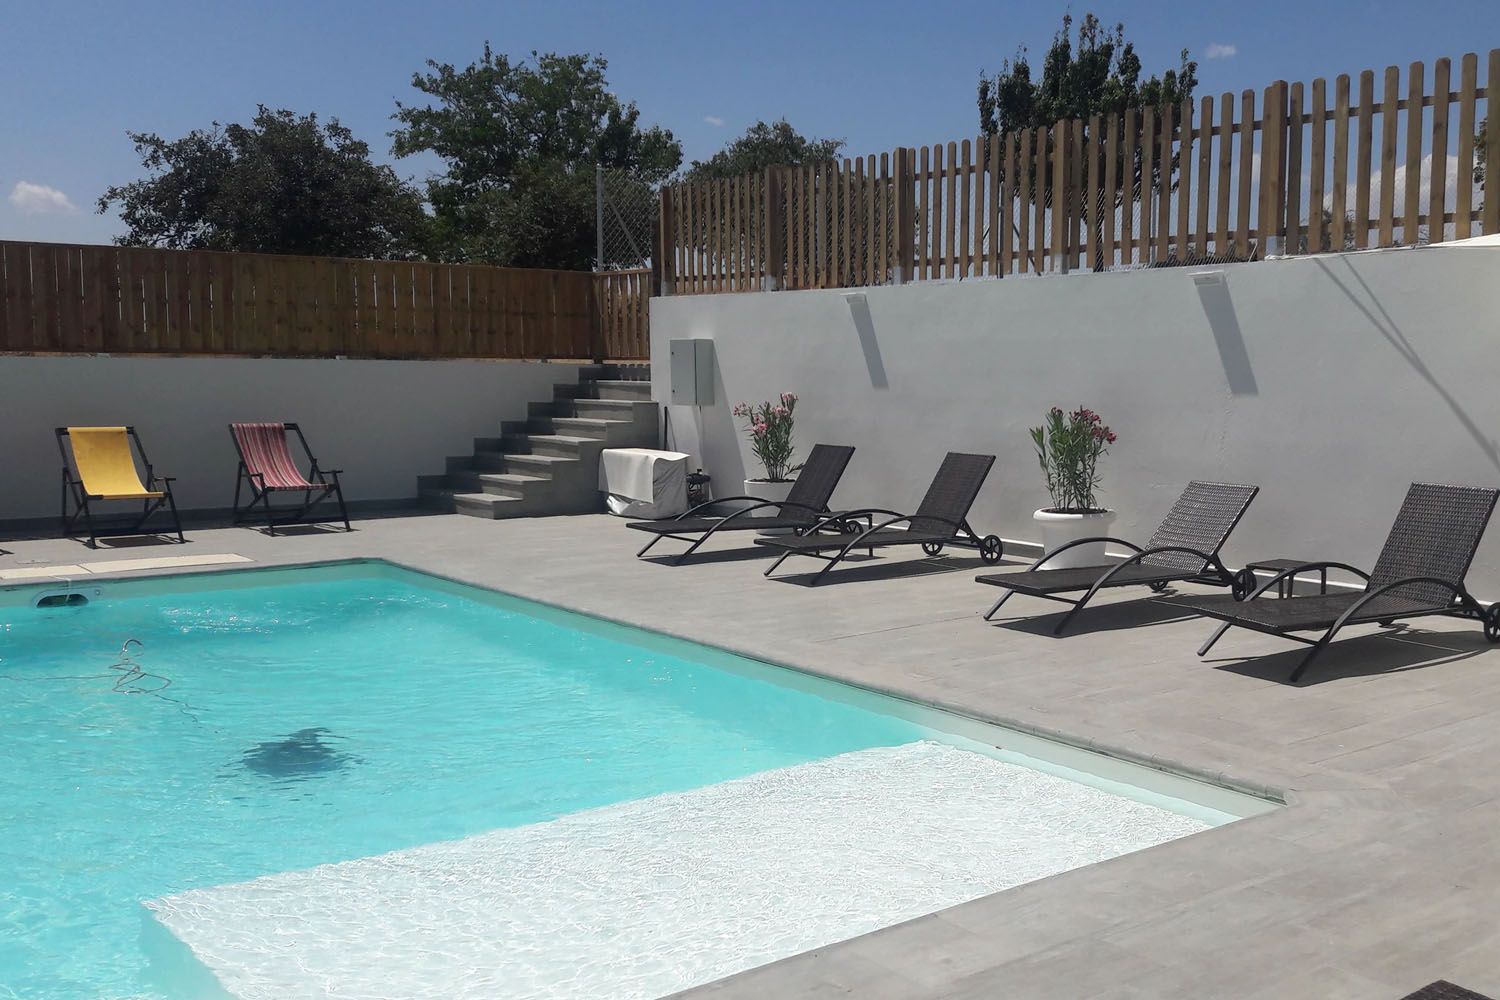 Una piscina climatizada que se alquila por horas en la Sierra de Guadalajara / SWIMMY